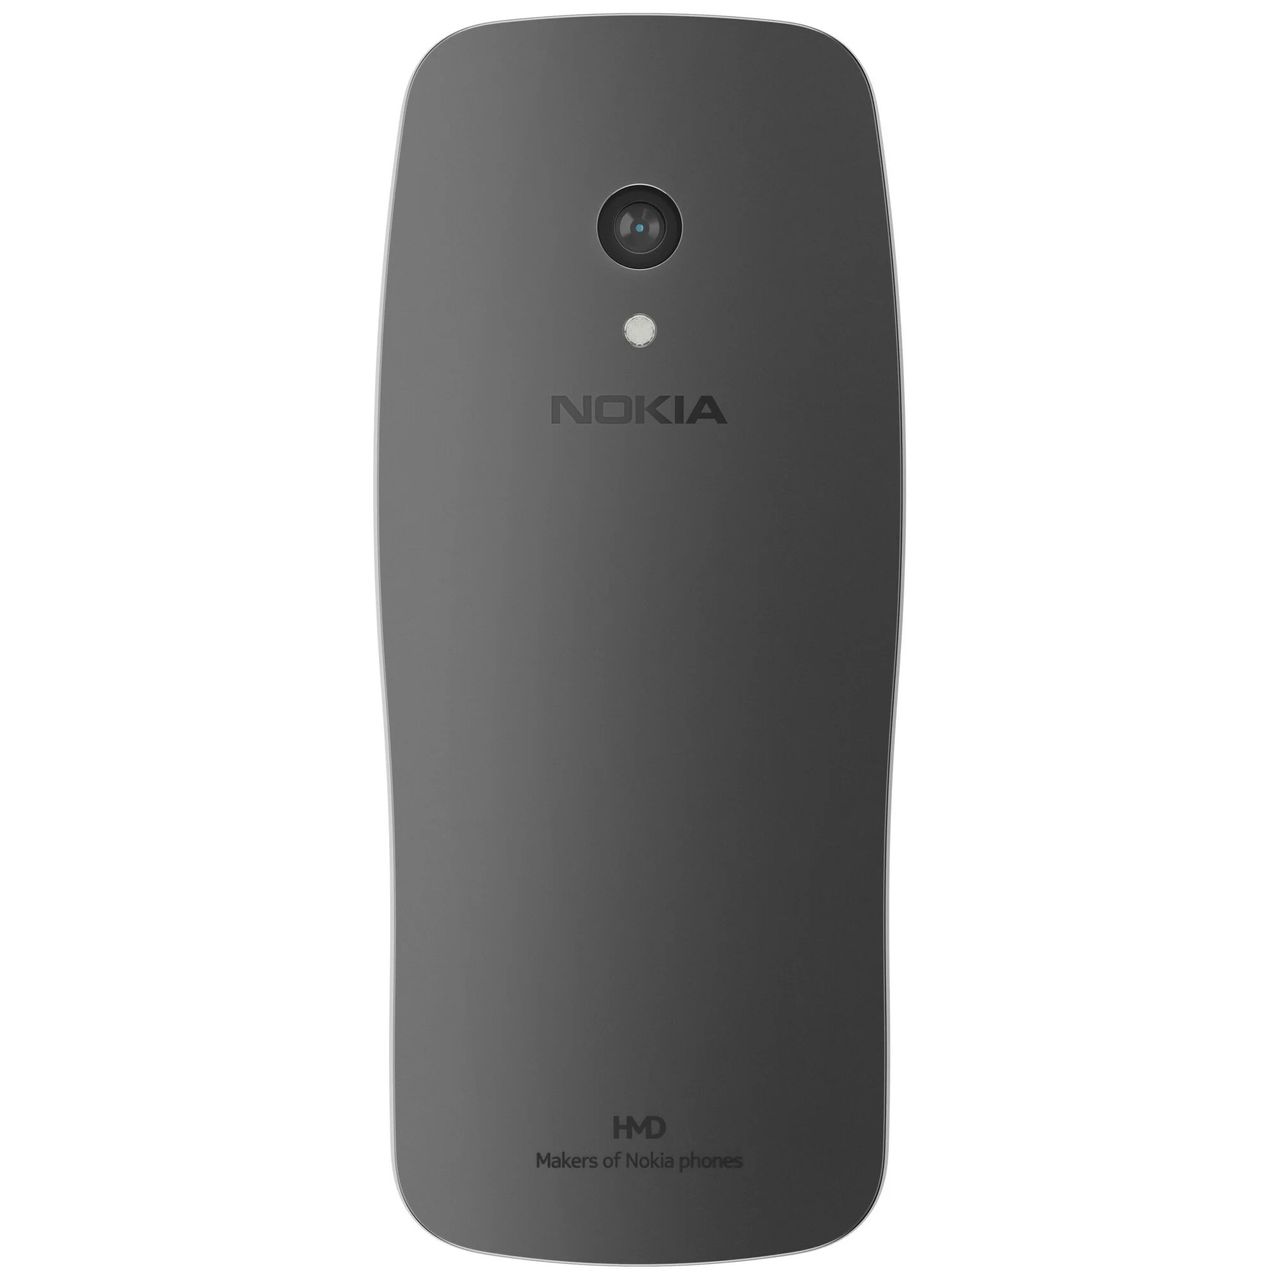 Nowa Nokia 3210 w wersji szarej